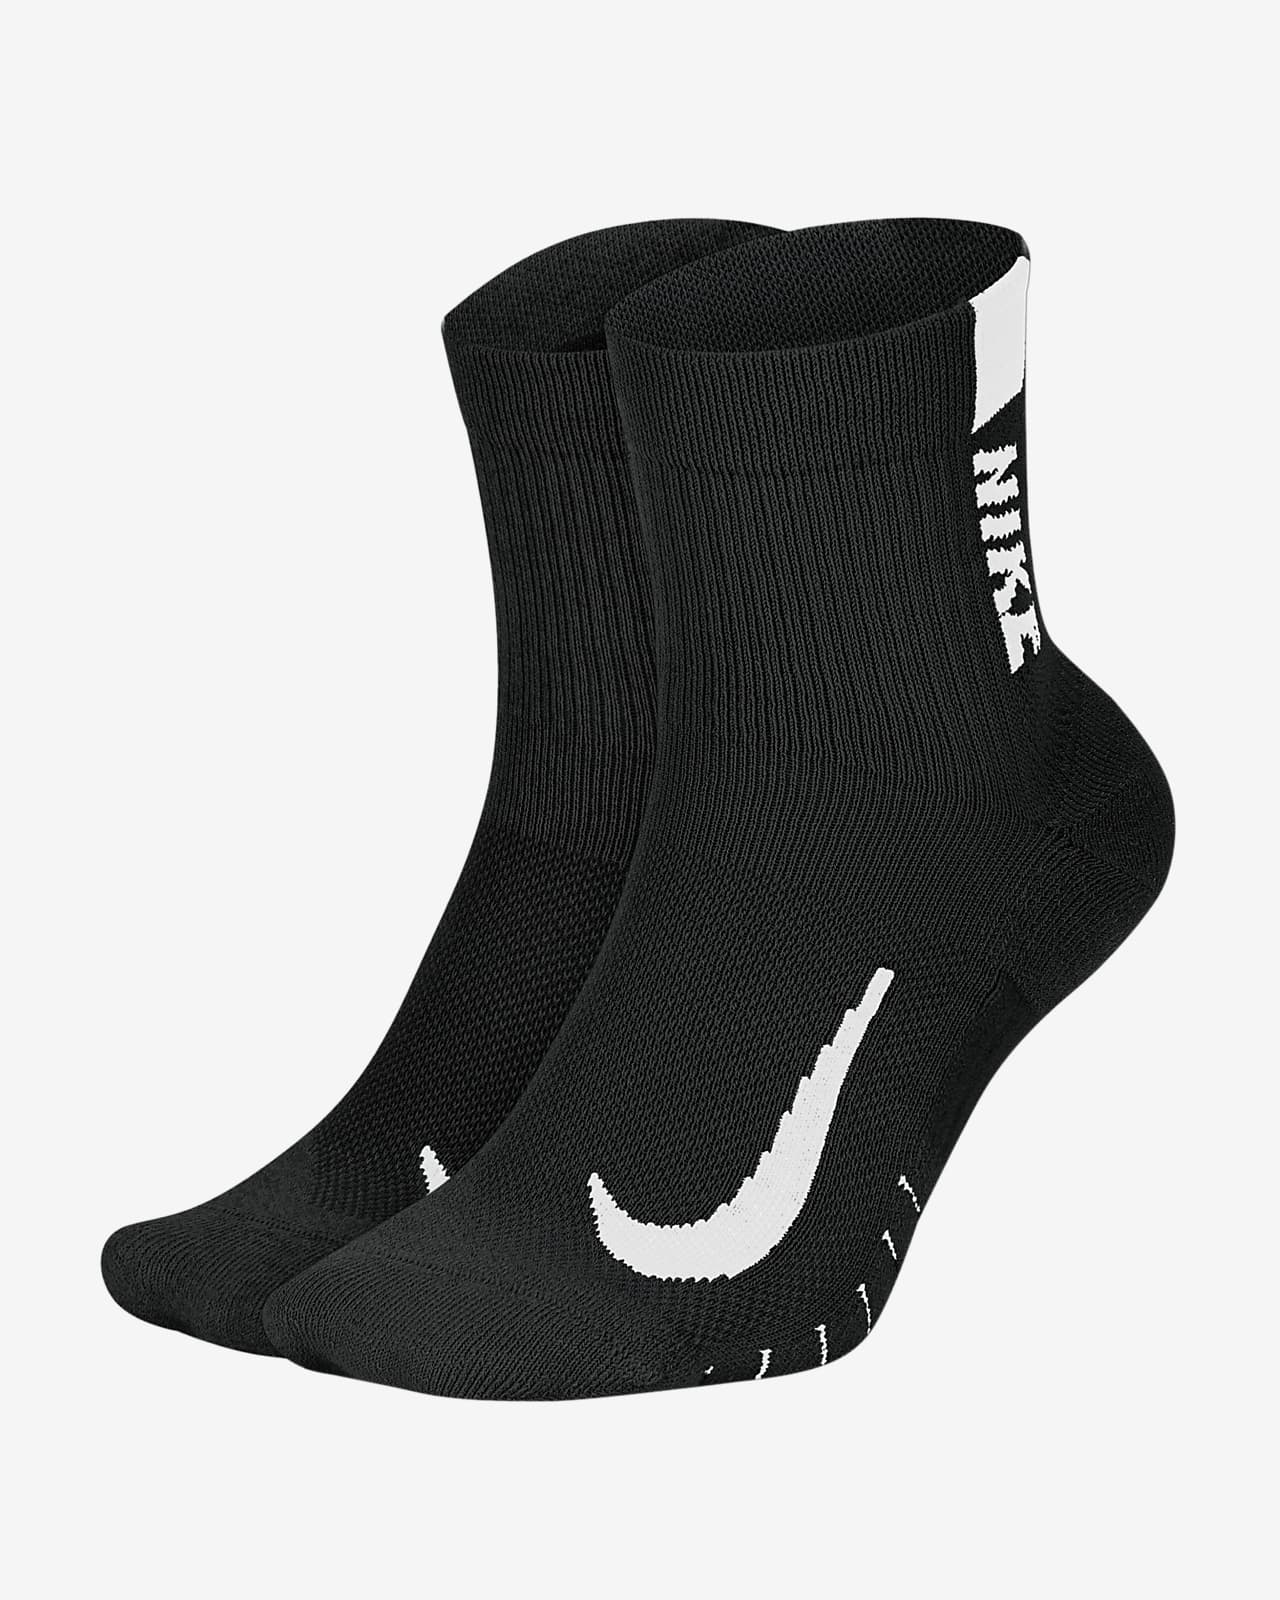 Κάλτσες ankle για τρέξιμο Nike Multiplier (2 ζευγάρια)